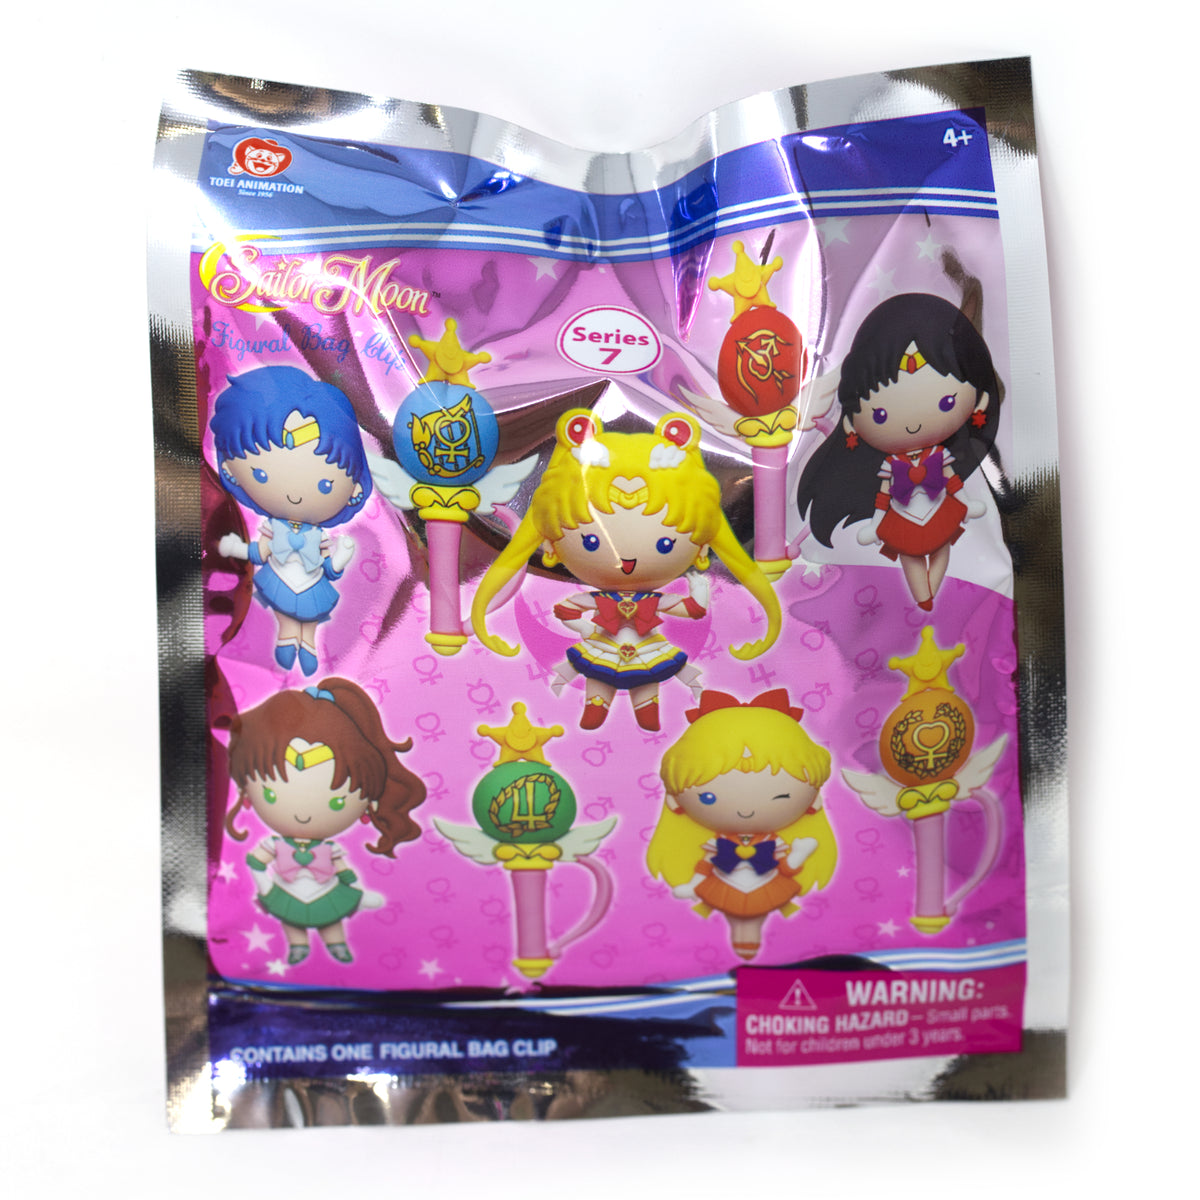 Sailor Moon 3D Mystery Bag Clip Series 7